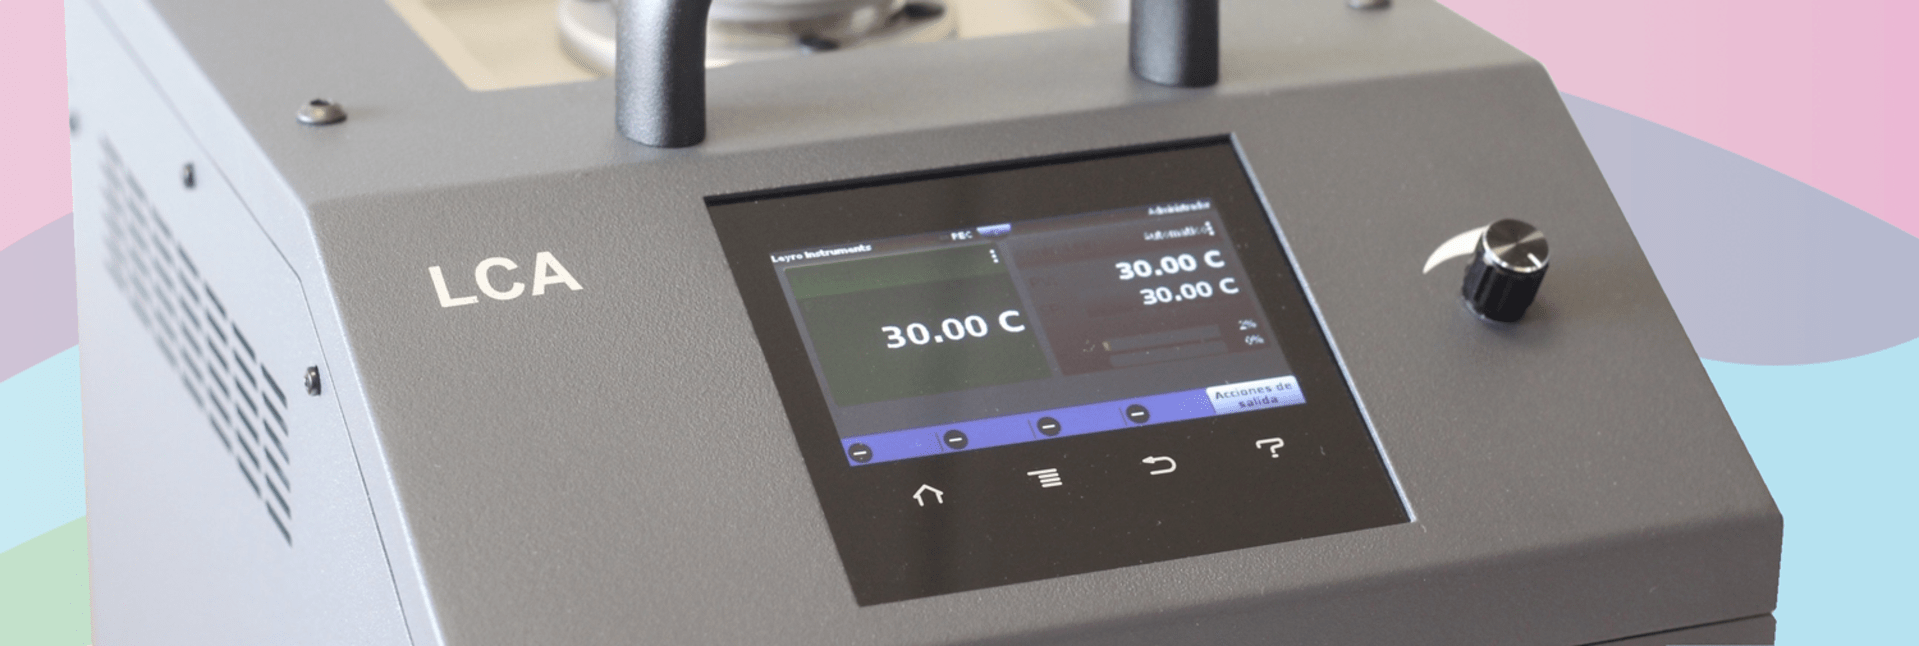 Nowość w ofercie 2019 - LEYRO Instrument - urządzenia kalibracyjne temperatury i ciśnienia klasy laboratoryjnej